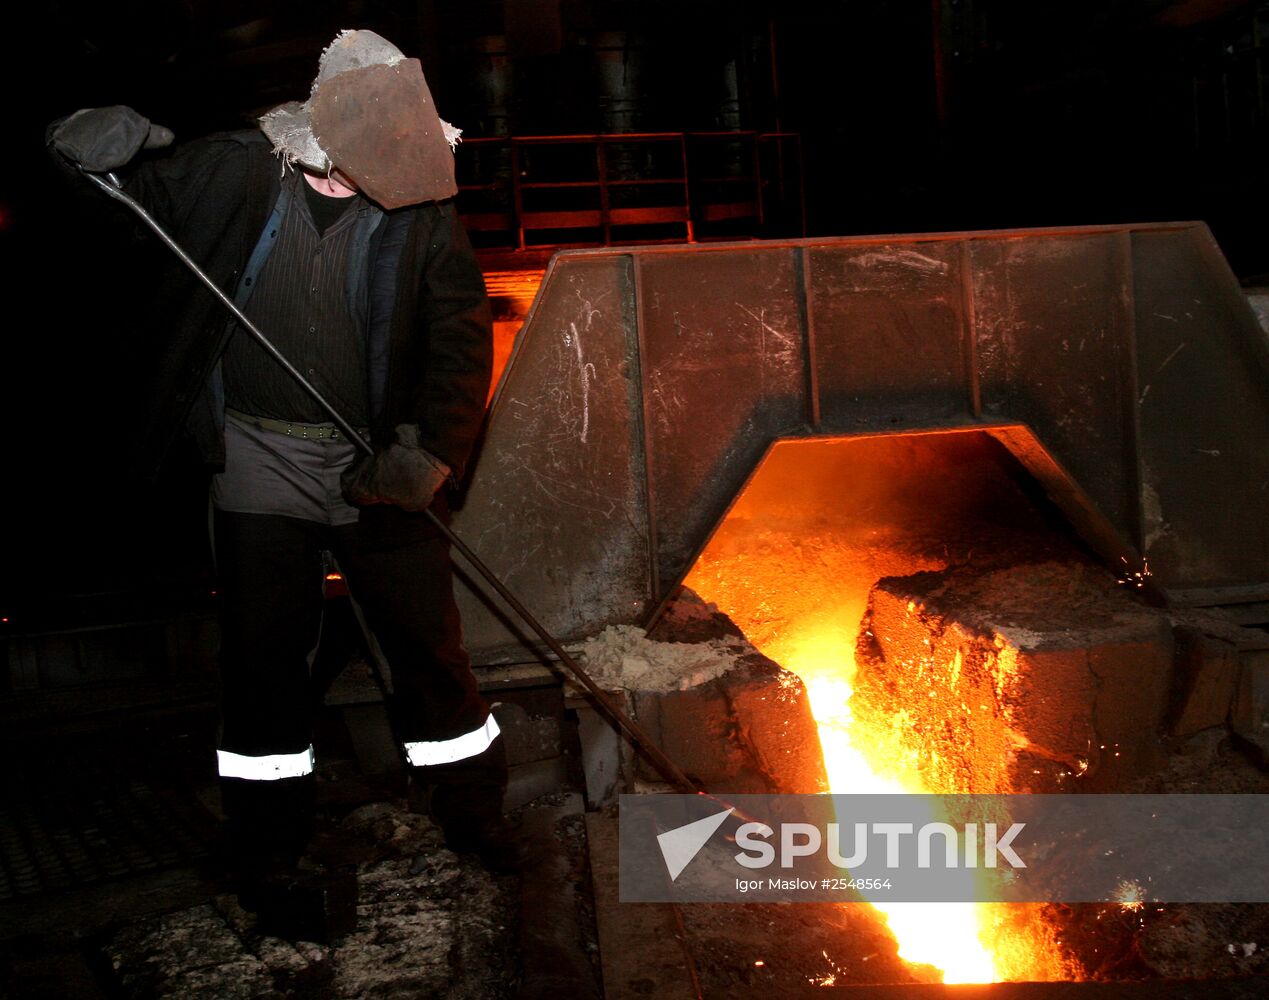 Yenakiieve Iron and Steel Works